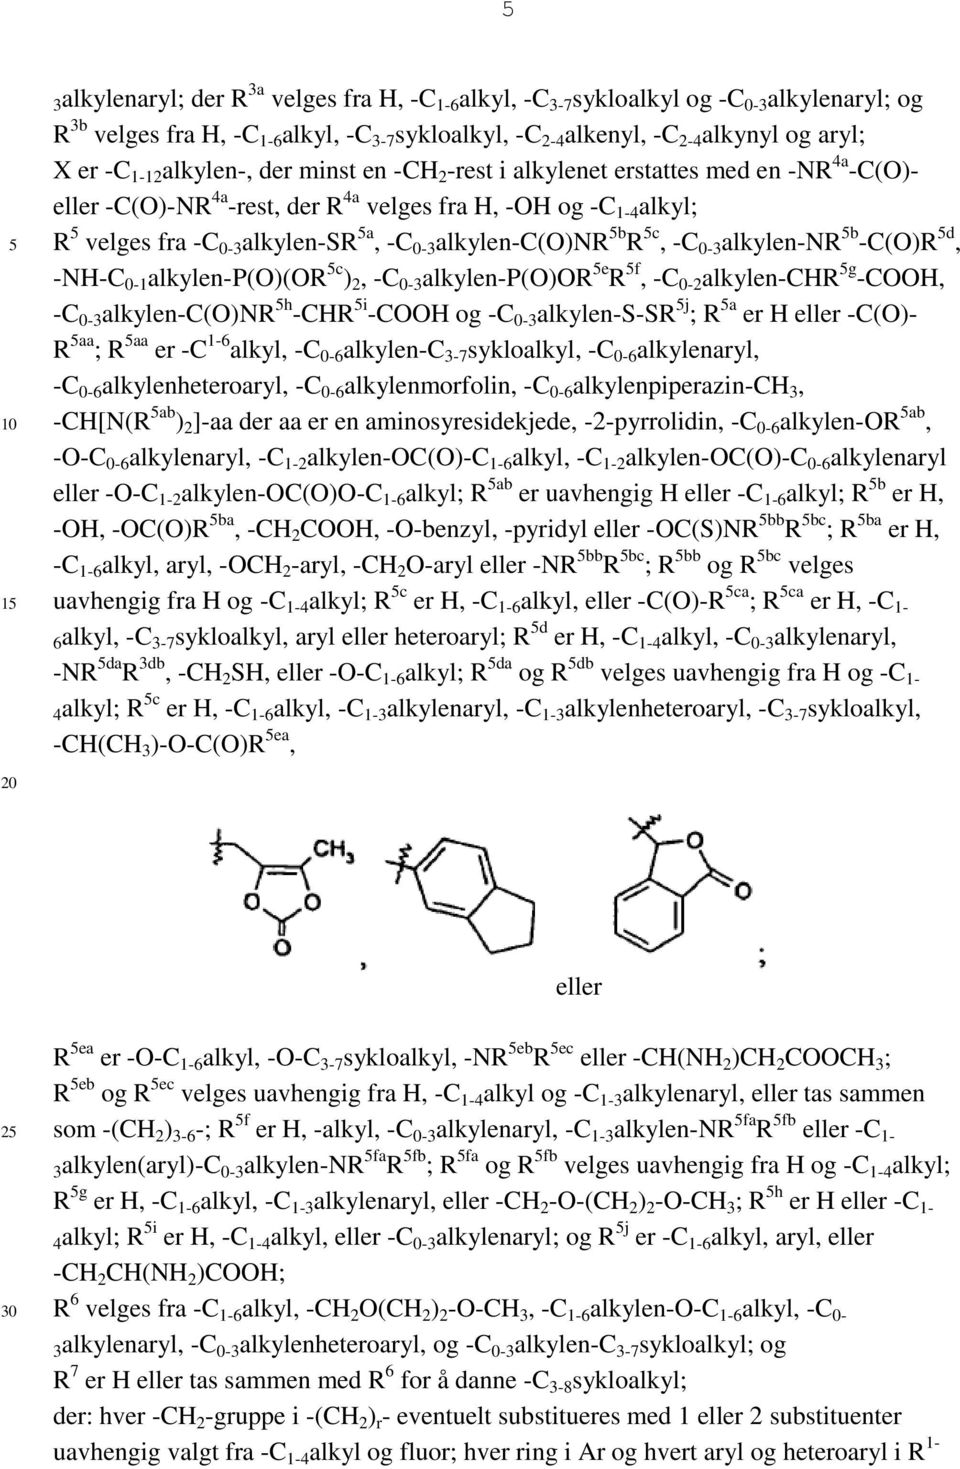 alkylen-c(o)nr b R c, -C 0-3 alkylen-nr b -C(O)R d, -NH-C 0-1 alkylen-p(o)(or c ) 2, -C 0-3 alkylen-p(o)or e R f, -C 0-2 alkylen-chr g -COOH, -C 0-3 alkylen-c(o)nr h -CHR i -COOH og -C 0-3